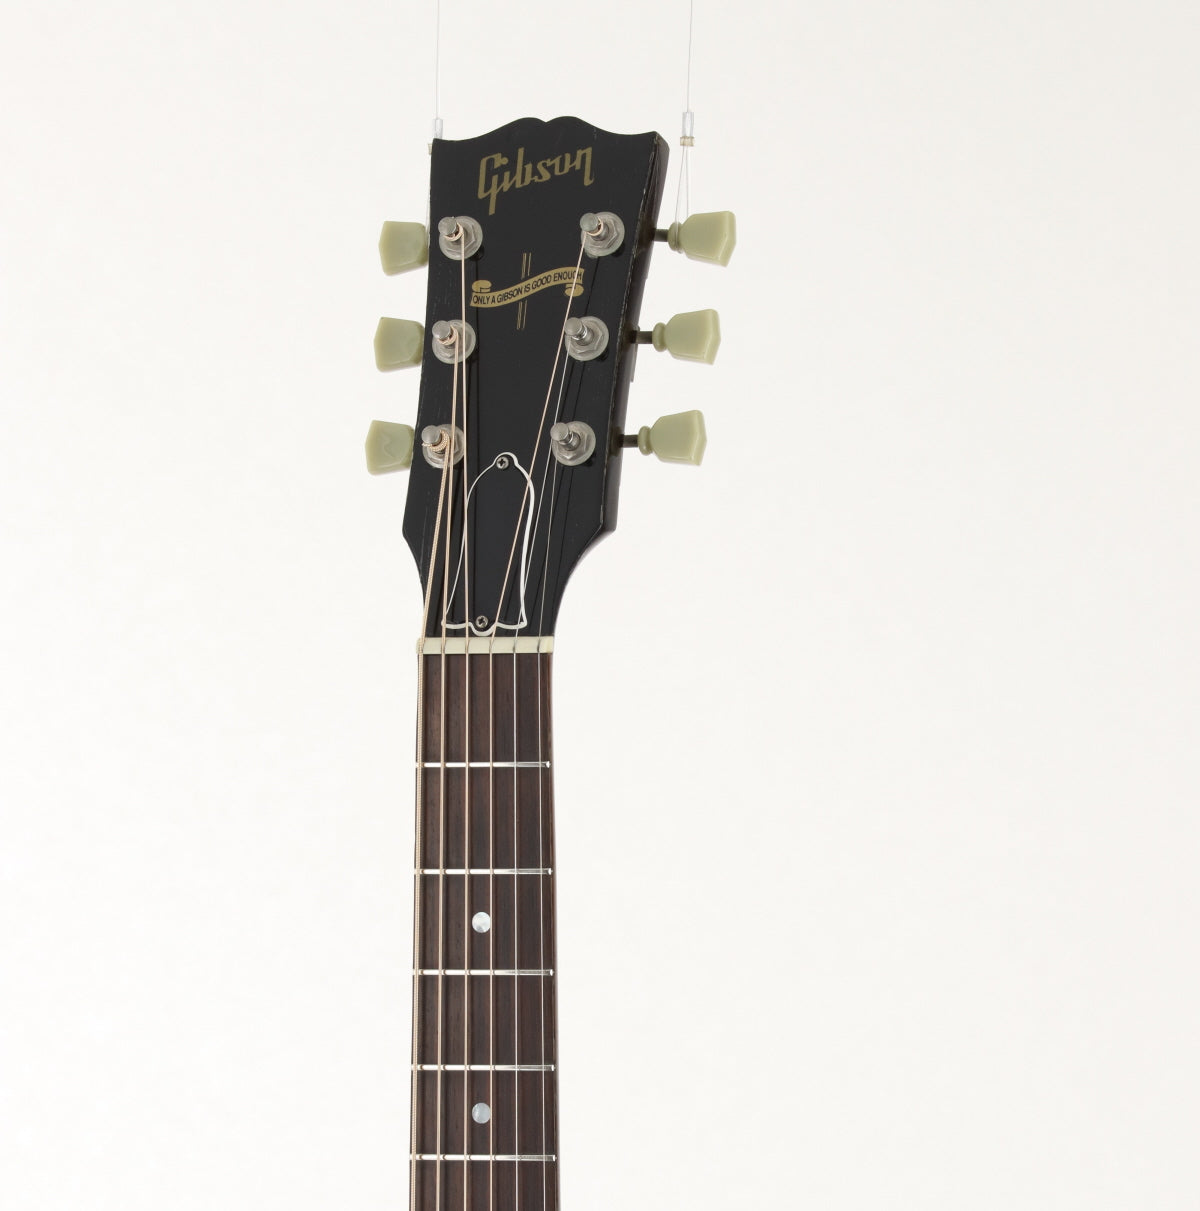 [SN 92364001] USED Gibson / J-45 Western Vintage Sunburst 1994 [09]